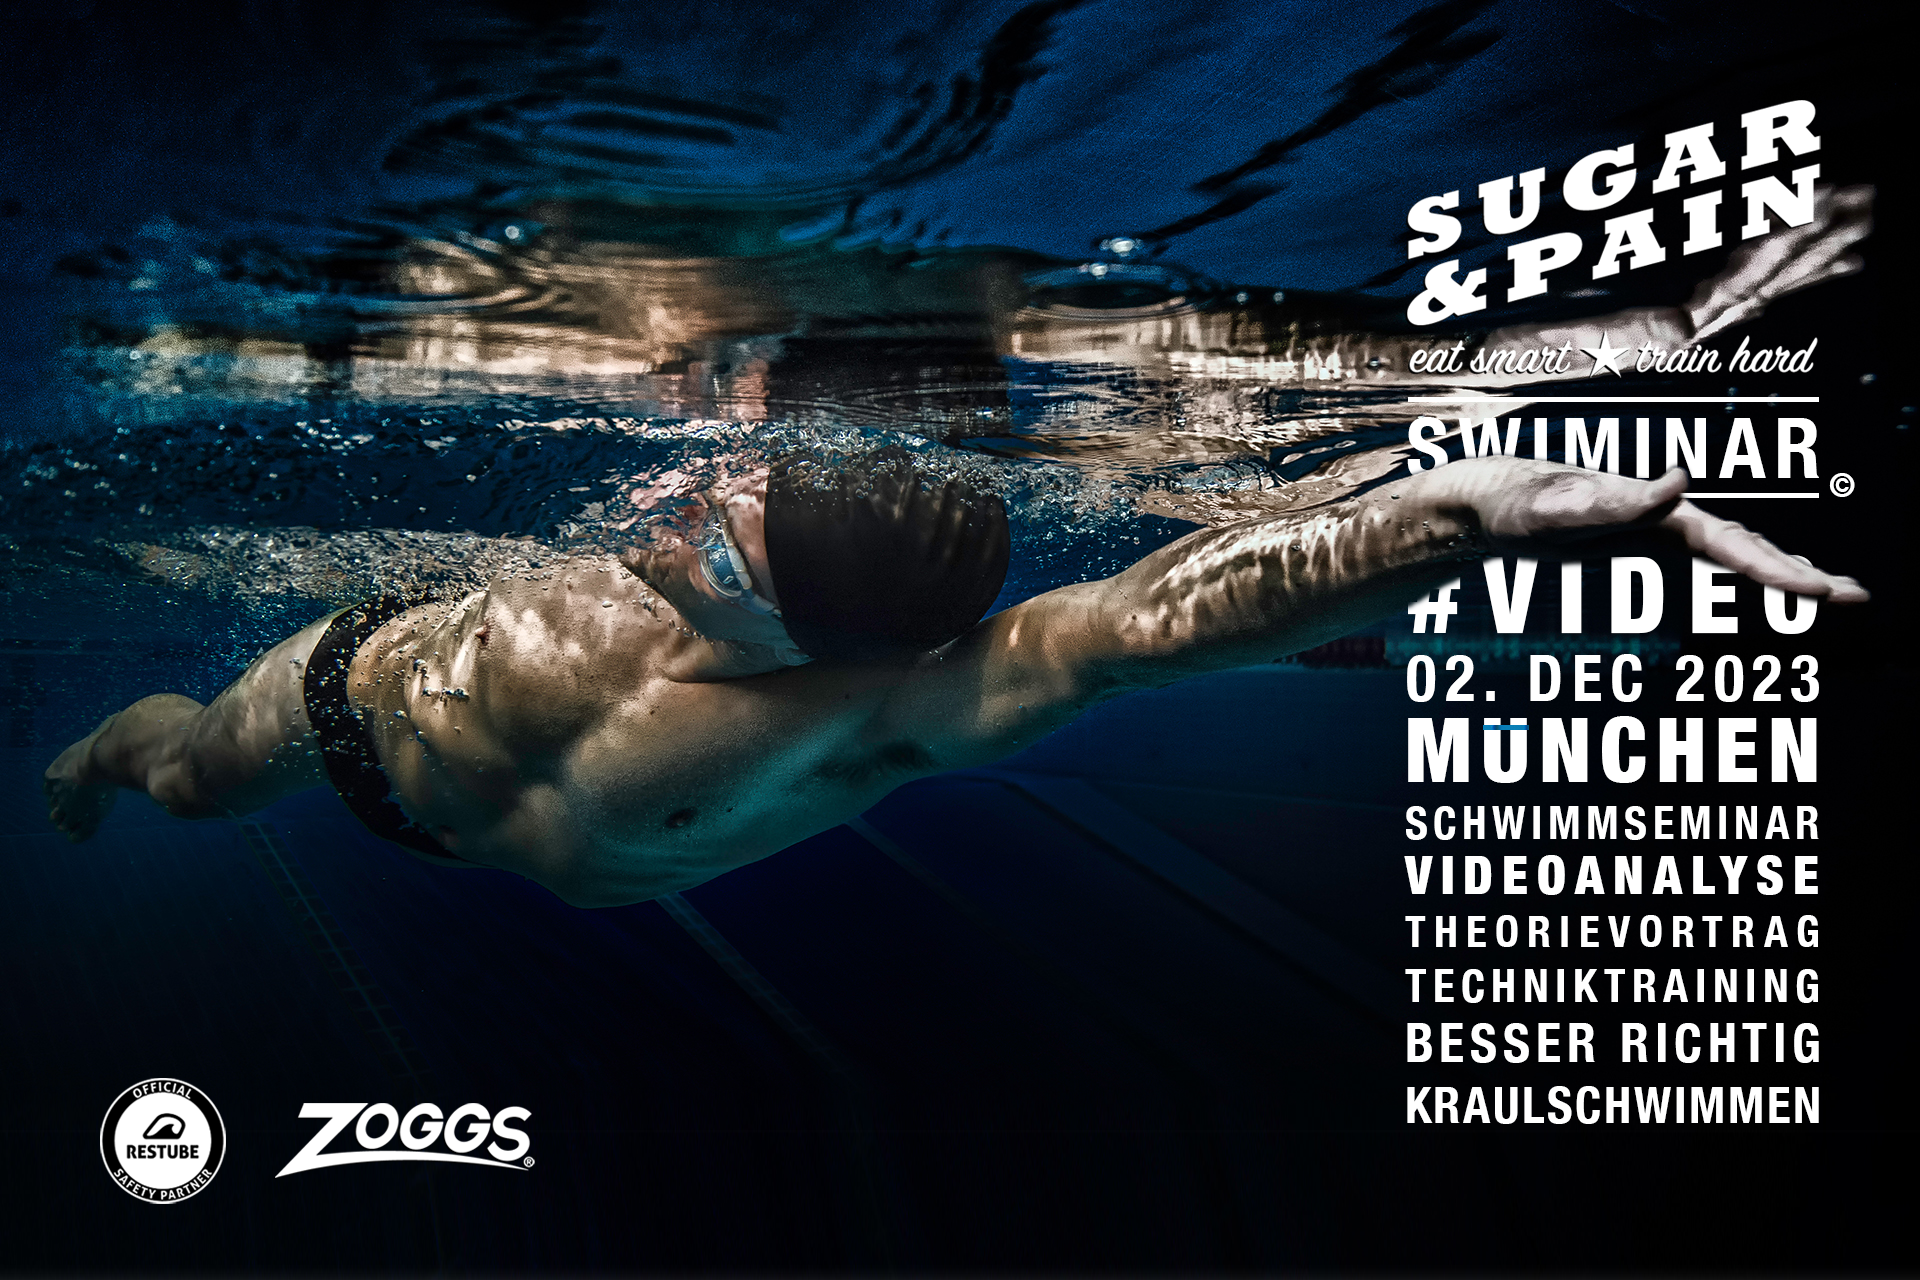 SWIMINAR #VIDEO 03/24 Richtig Kraulschwimmen wie ein Profi / Photo & Titel © Stefan Drexl, SUGAR & PAIN